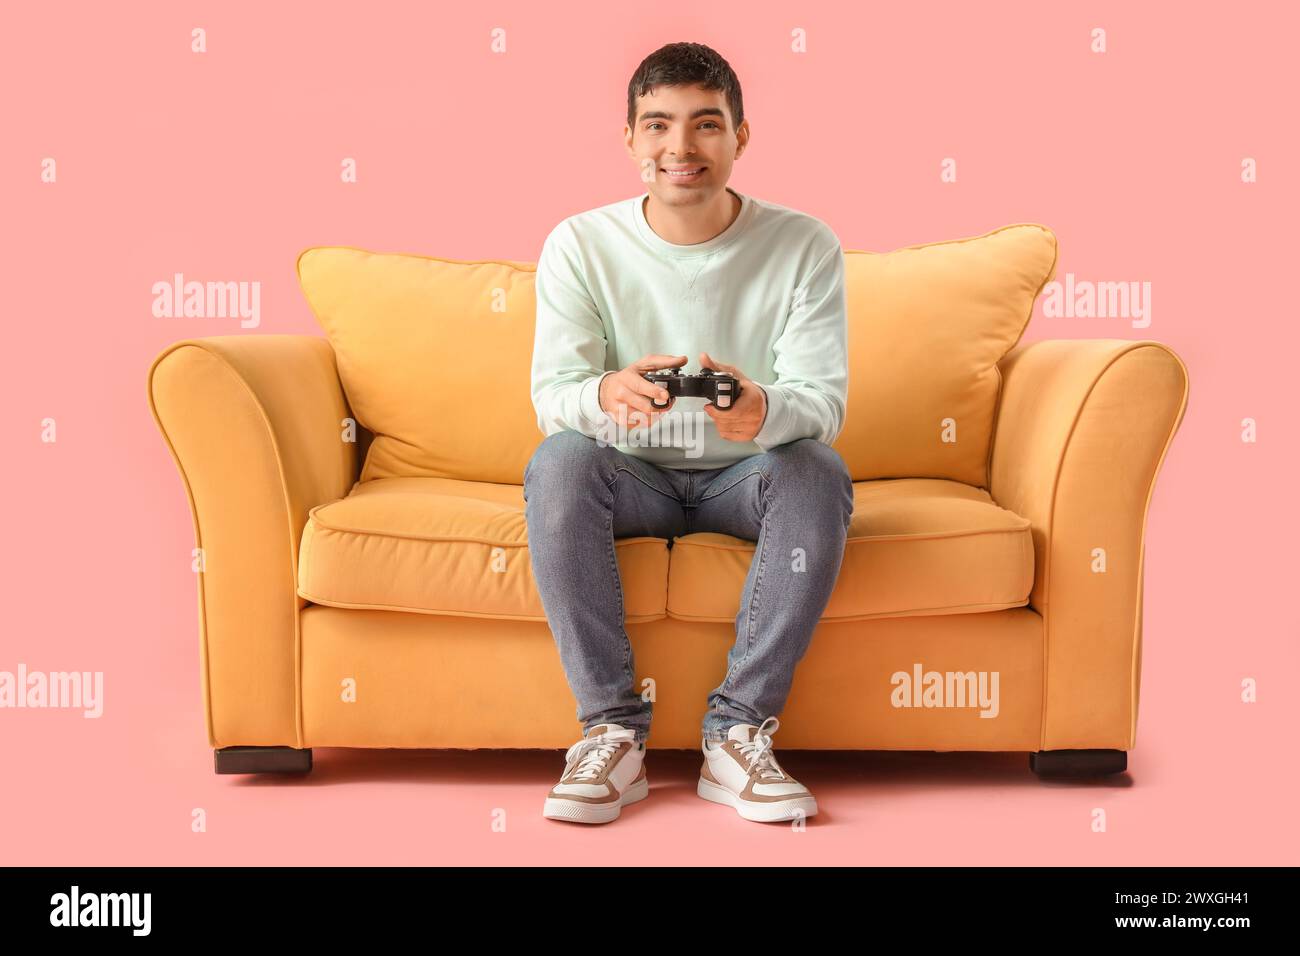 Schöner junger Mann, der Videospiel auf gelbem Sofa vor rosa Hintergrund spielt Stockfoto